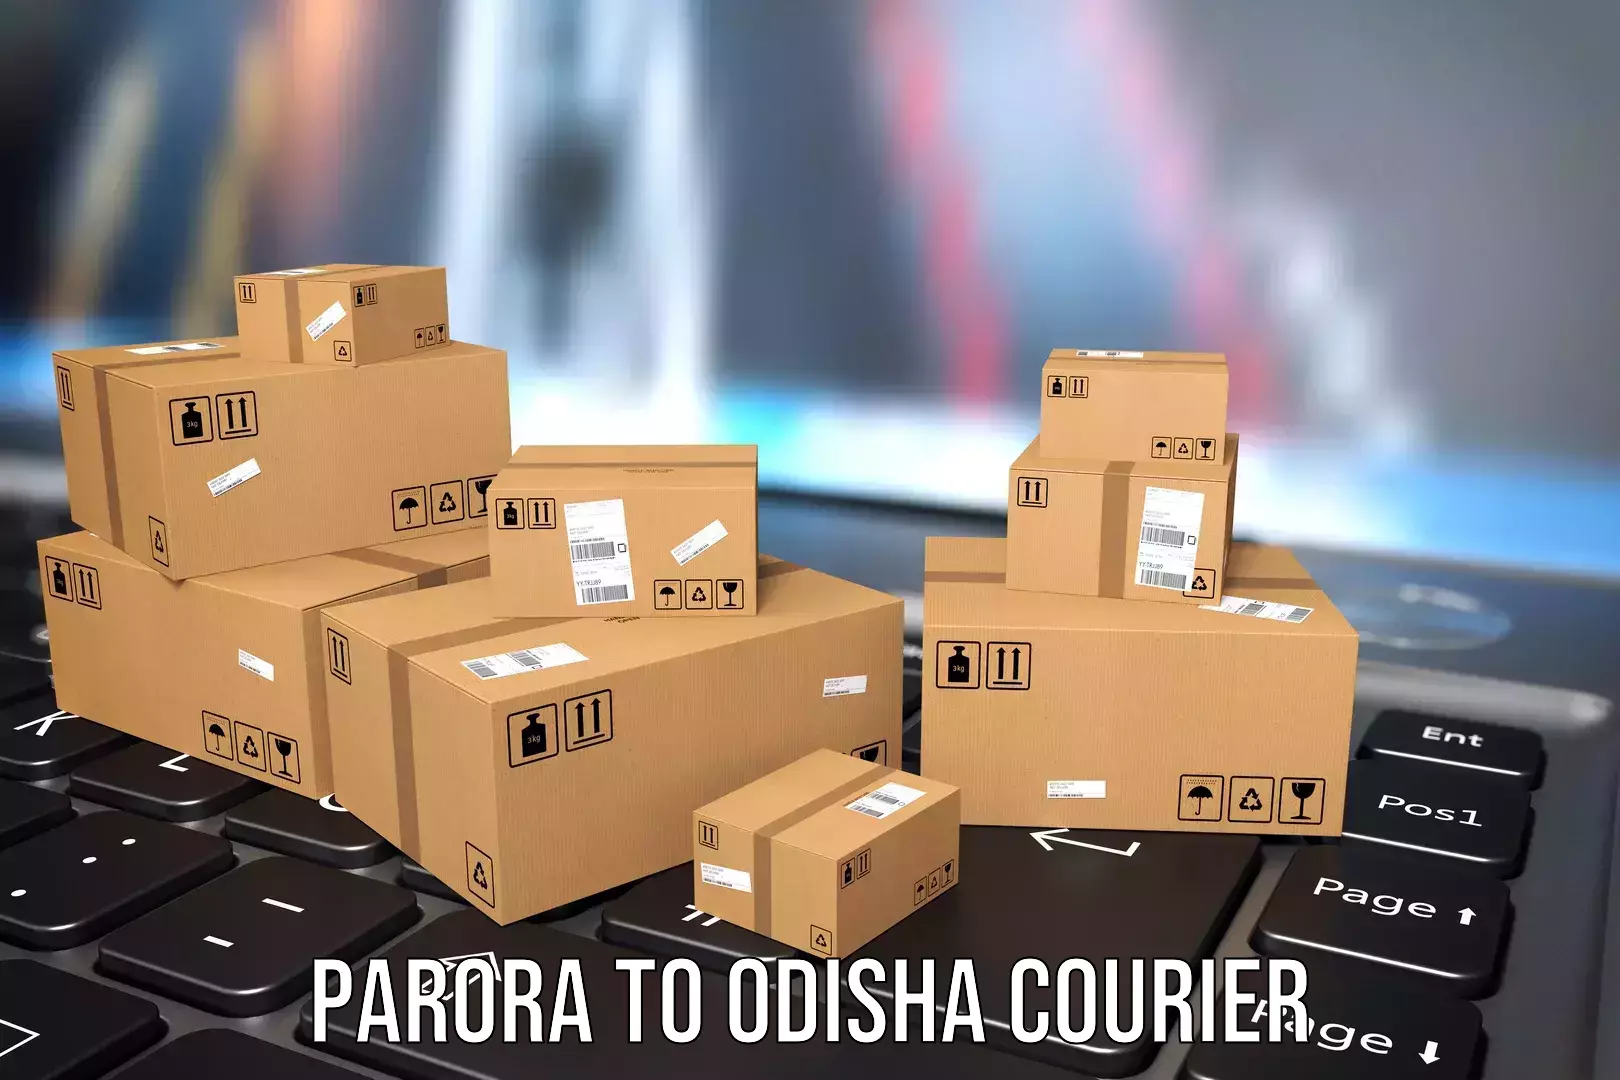 Baggage transport network Parora to Dhamara